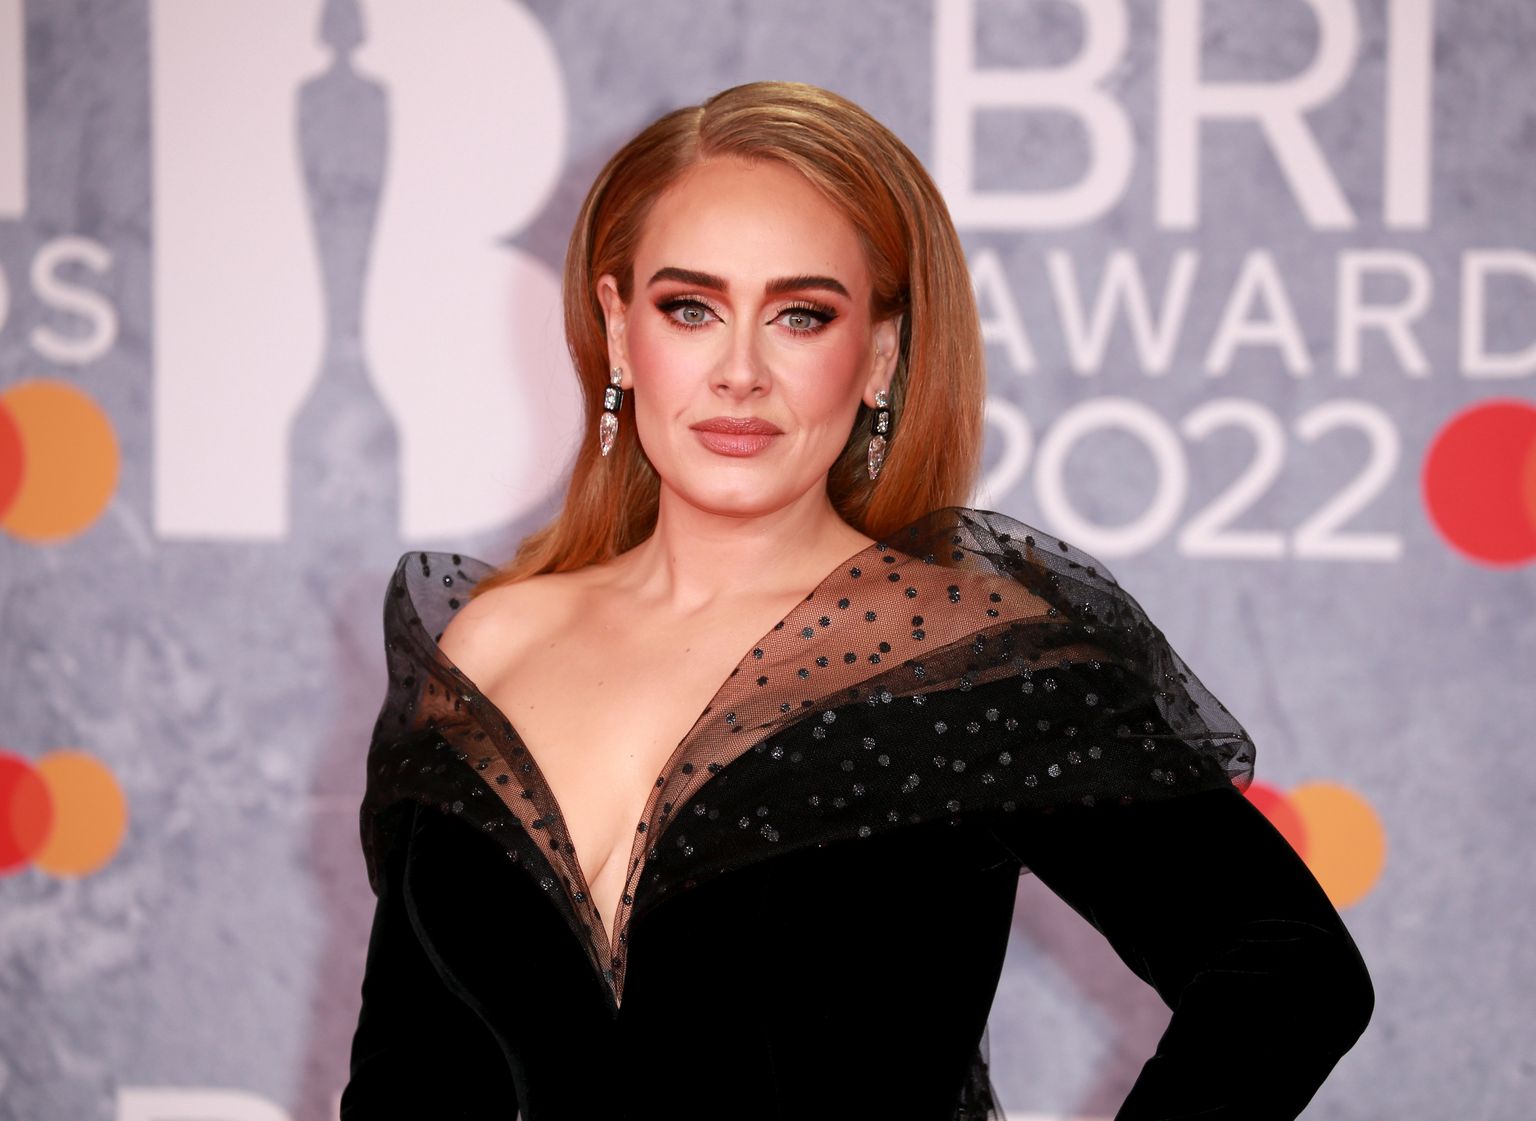 Adele Briti muusikaauhinna BRIT Award punasel vaibal.